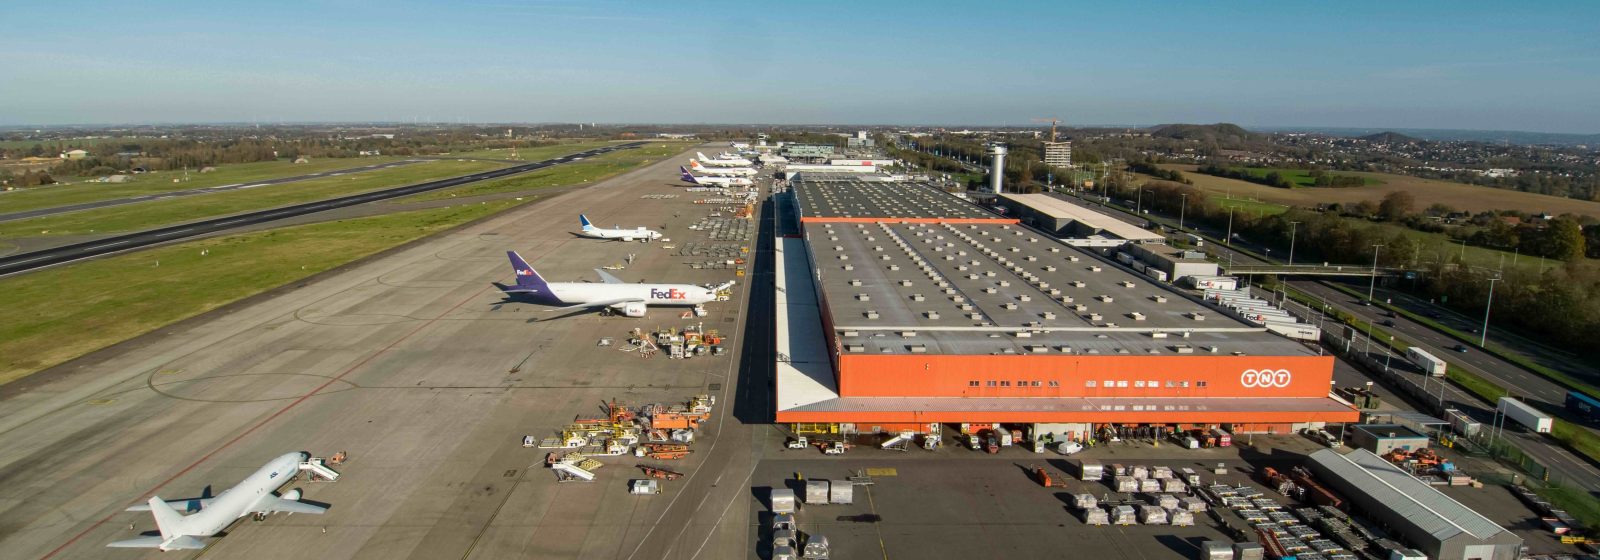 Dronebeeld Liege Airport